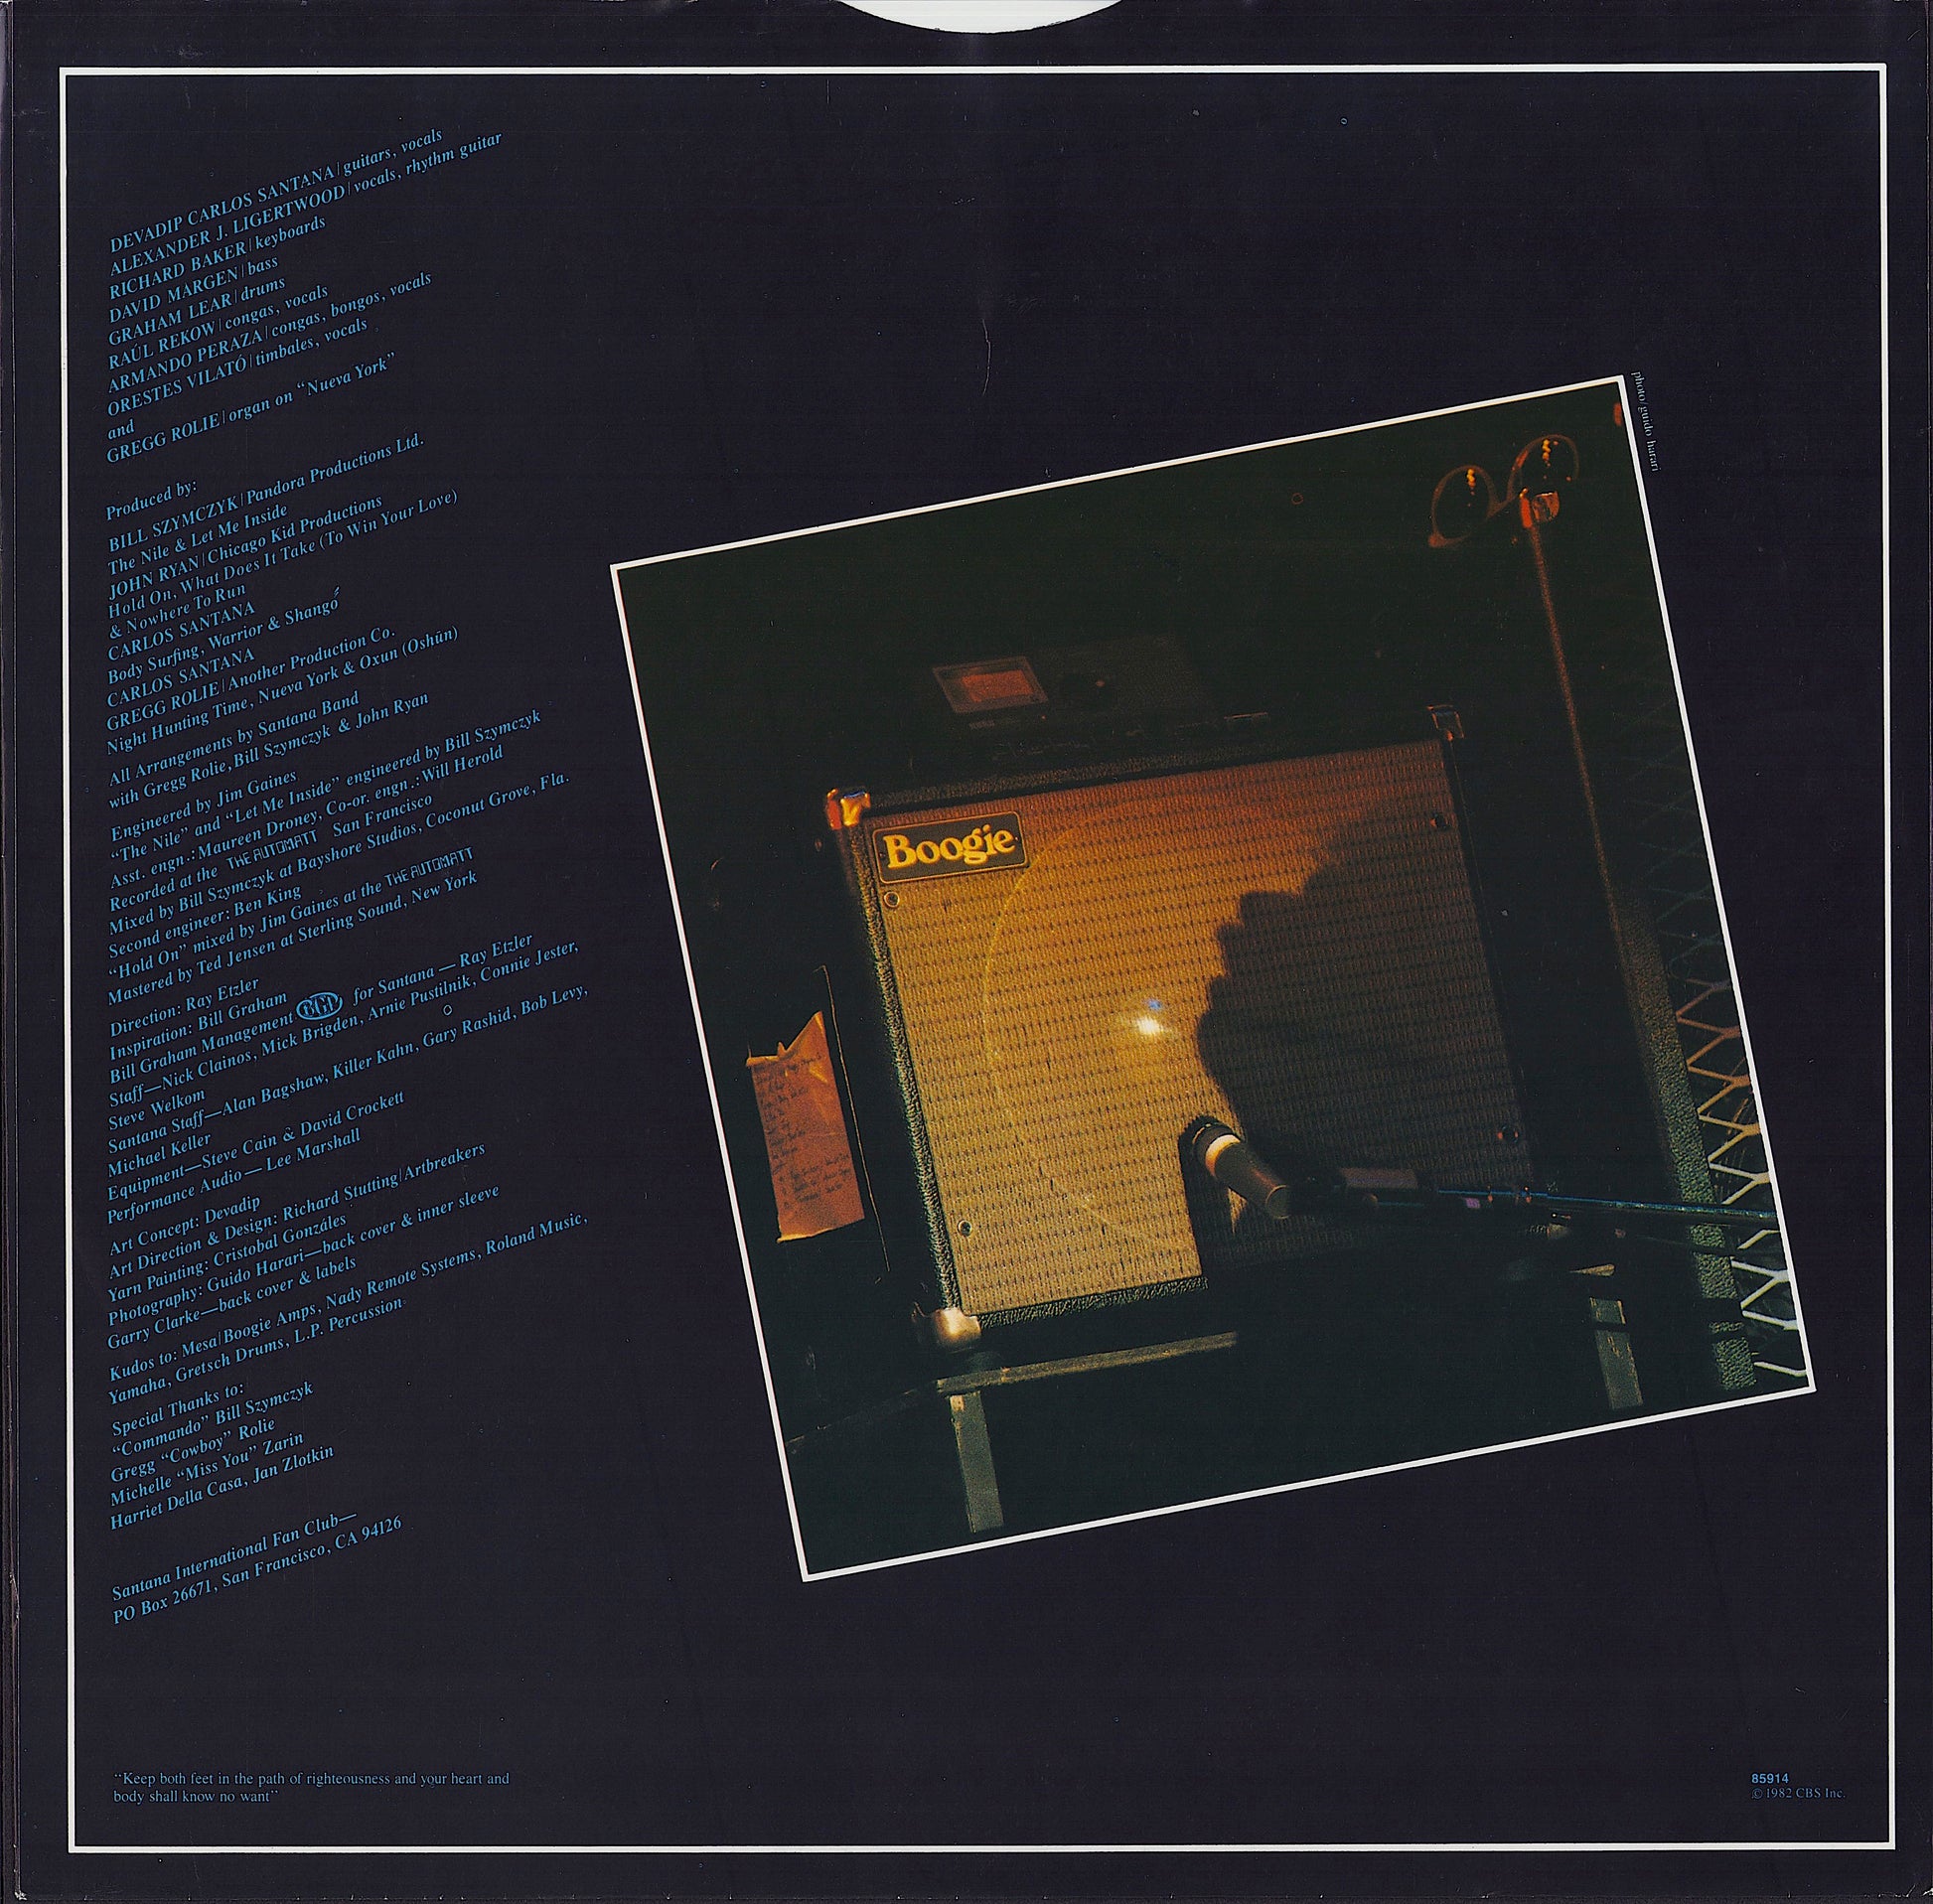 Santana - Shangó Vinyl LP